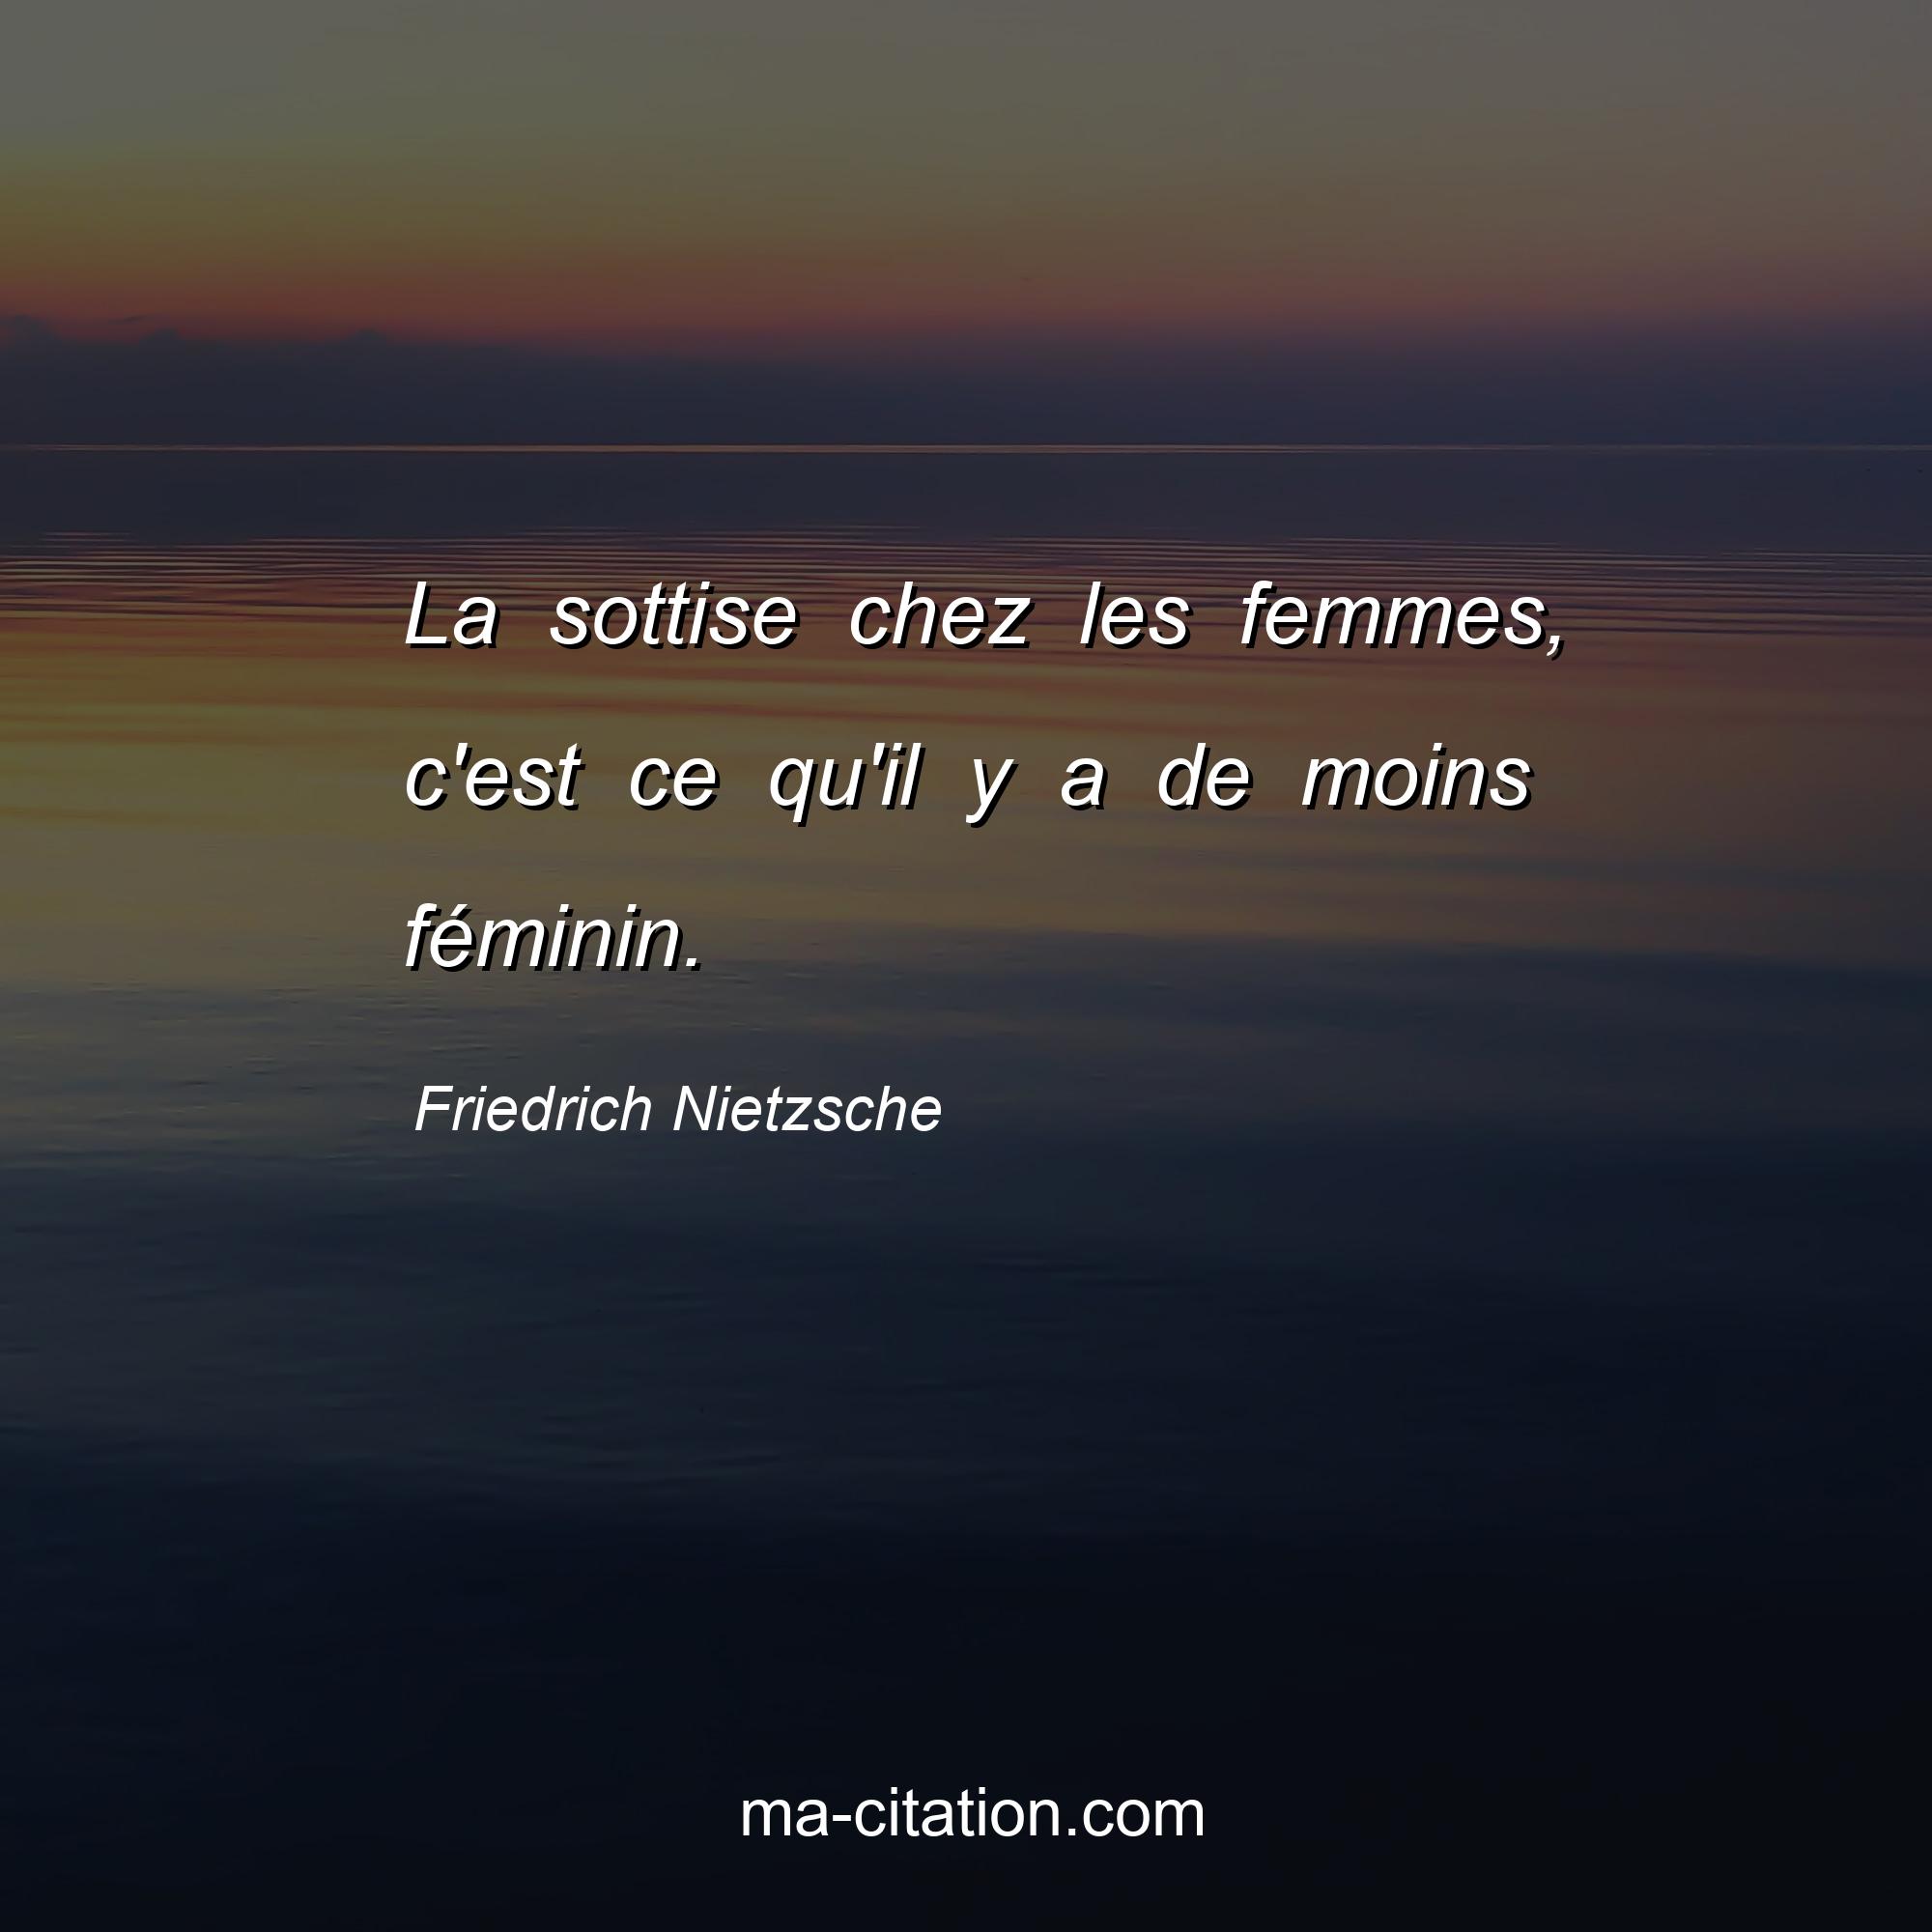 Friedrich Nietzsche : La sottise chez les femmes, c'est ce qu'il y a de moins féminin.